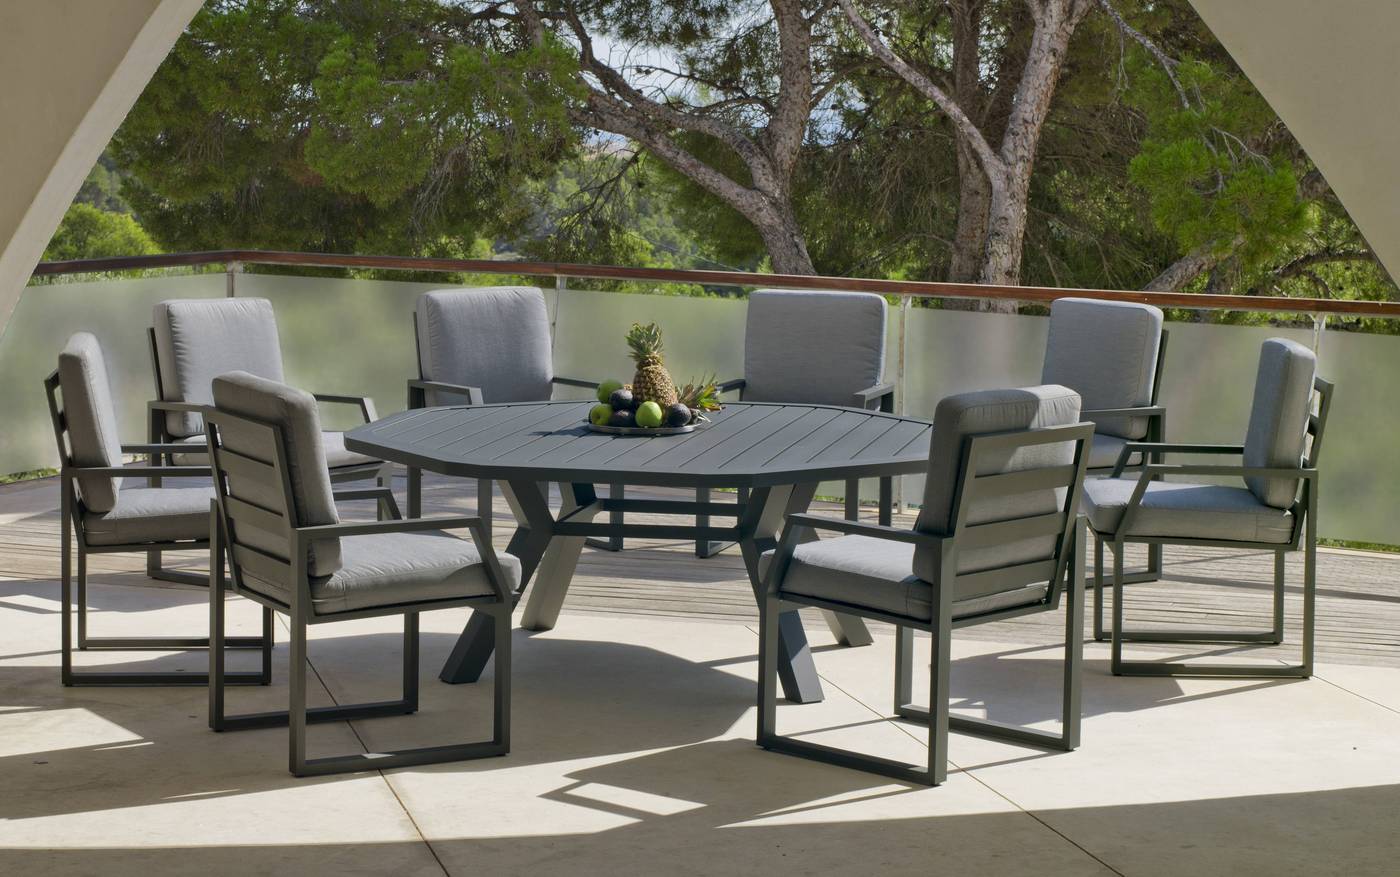 Sillón Aluminio Zafiro-31 - Sillón comedor para jardín o terraza. Estructura, asiento y respaldo de aluminio de color blanco, antracita, champagne, plata o marrón